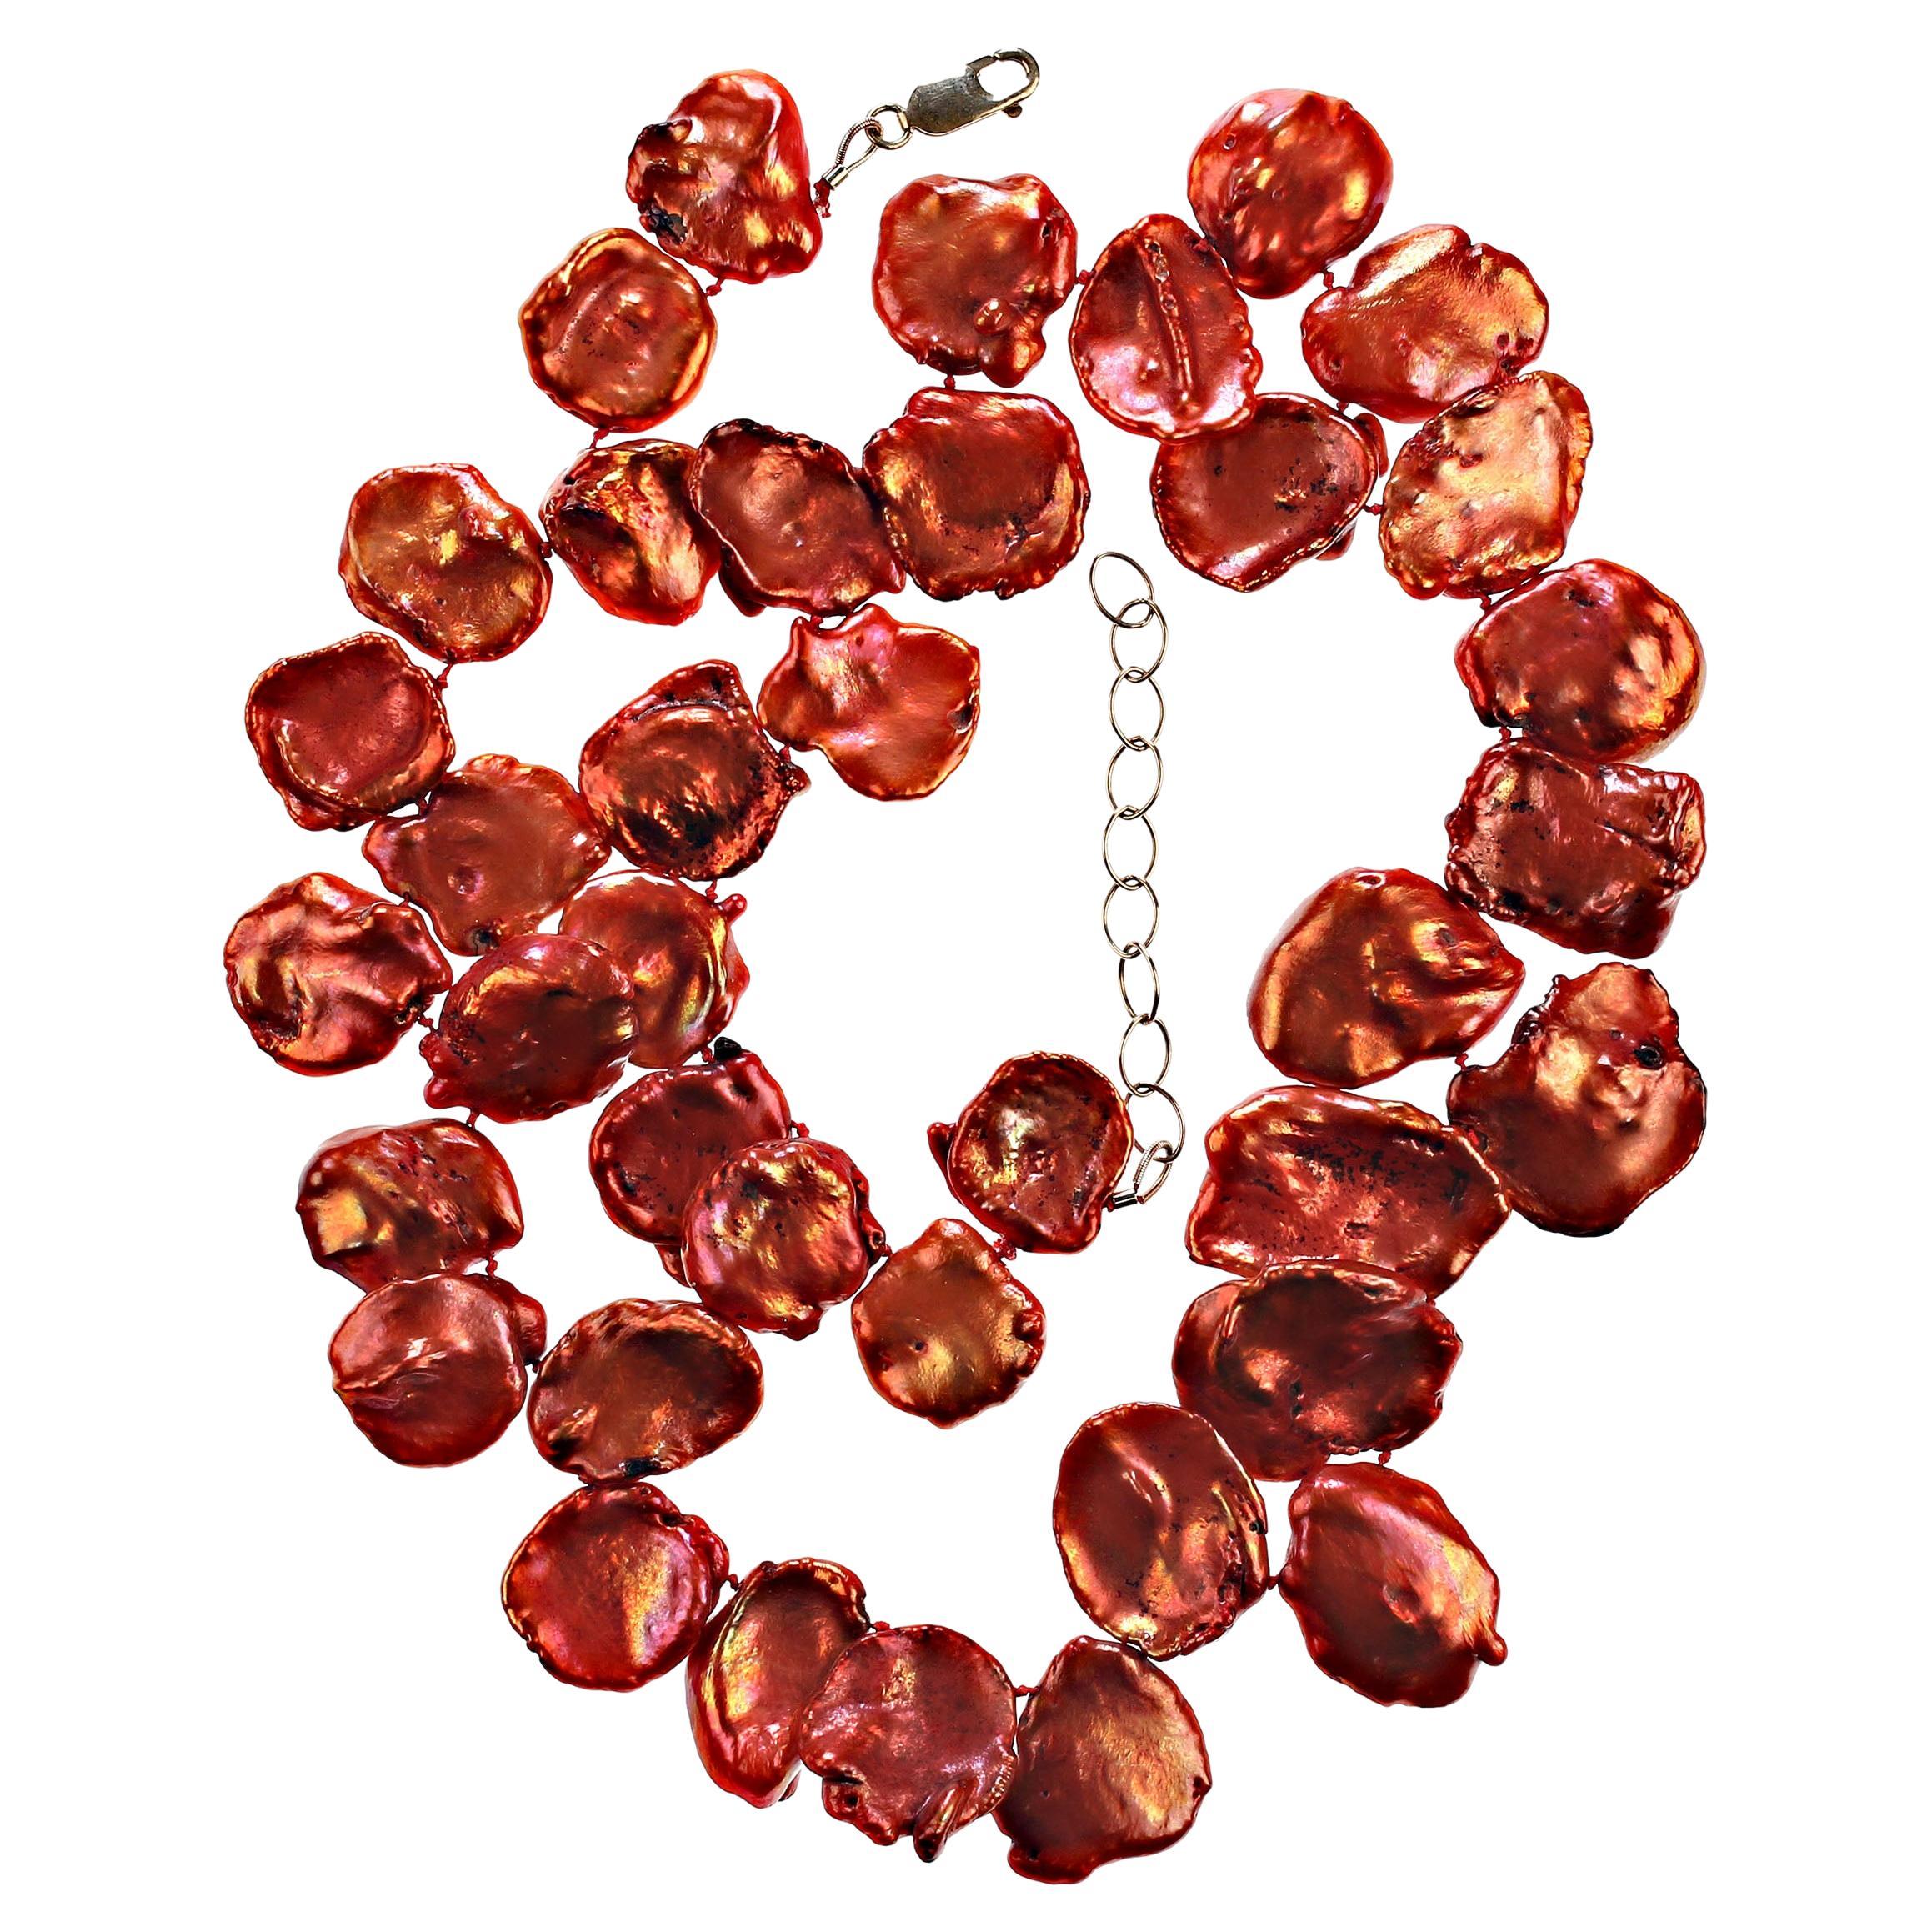 Abgestufte flache Keshi-Perlenkette in schönen, brünierten Orangetönen.  Diese einzigartige handgeknüpfte Perlenkette ist 19 Zoll lang. Die Farben der Perlen reichen von Orangerot bis Orange und Violett. Perle ist der Geburtsstein im Juni, aber